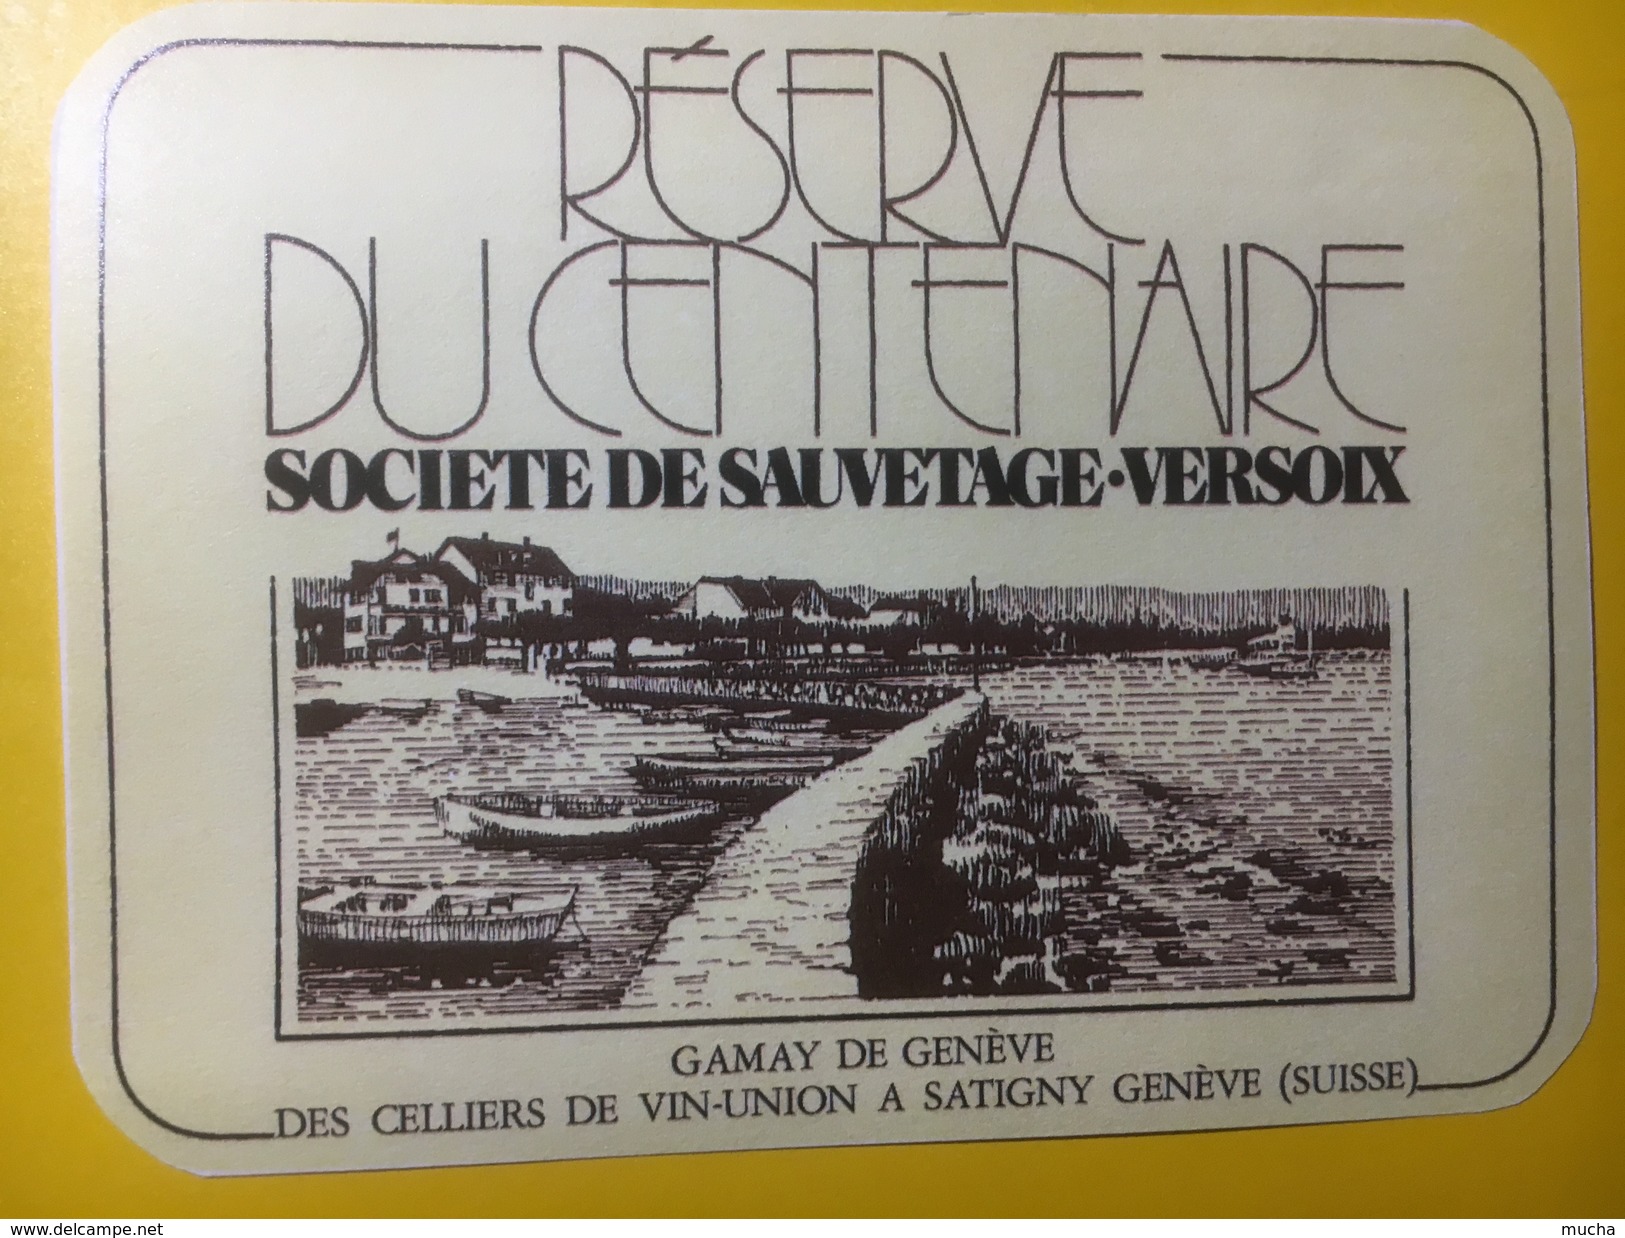 3746 - Réserve Du Centenaire Société De Sauvetage Versoix  Gamay De Genève - Barcos De Vela & Veleros